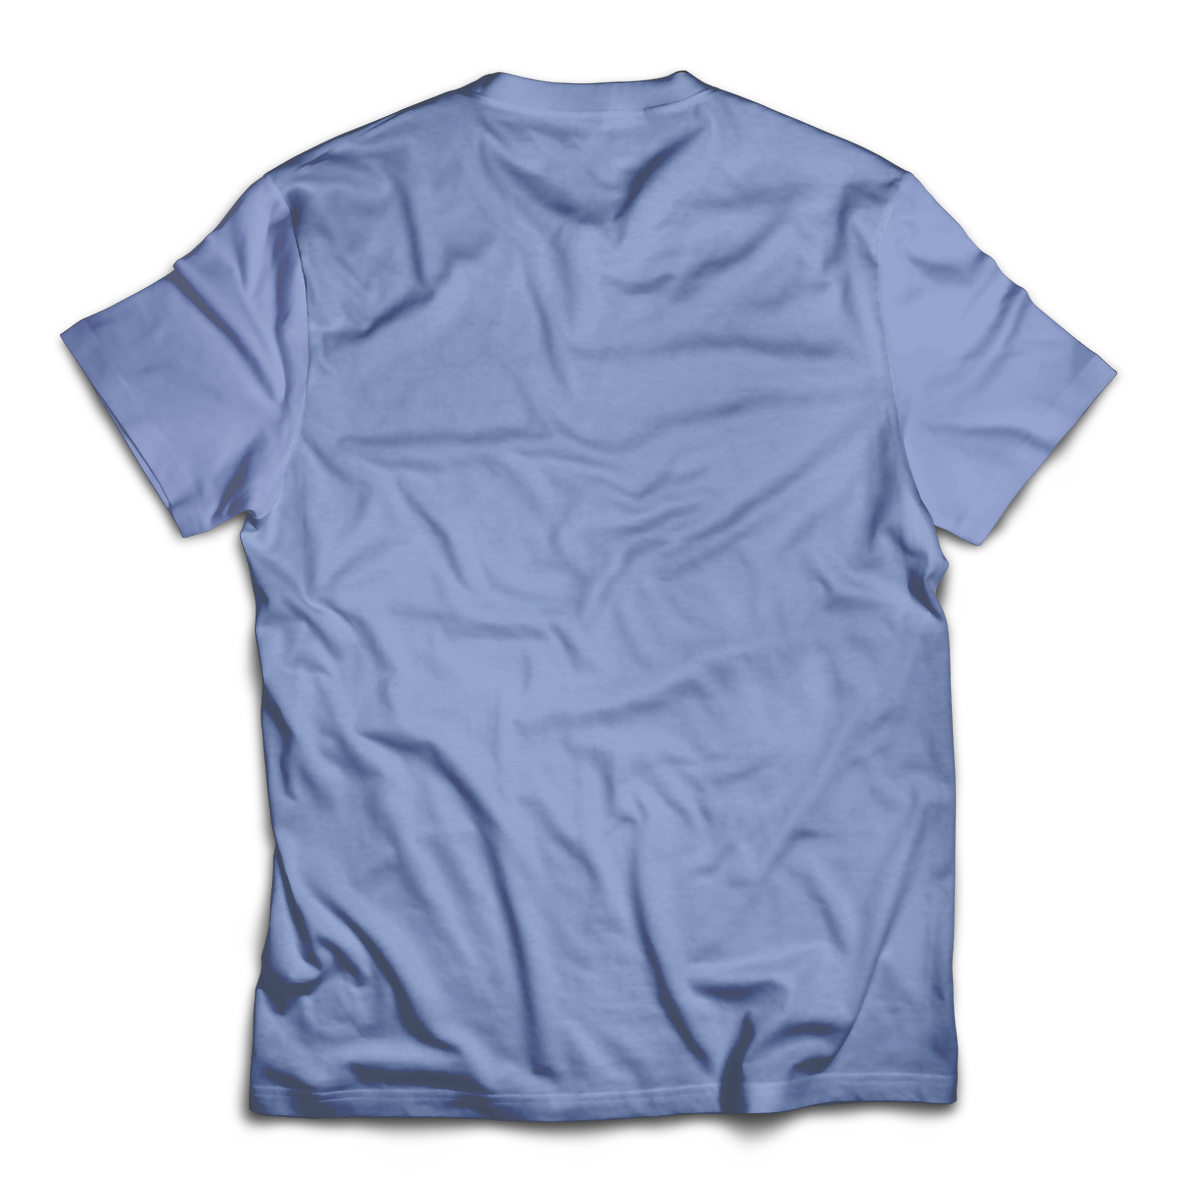 Avogato Unisex T-Shirt